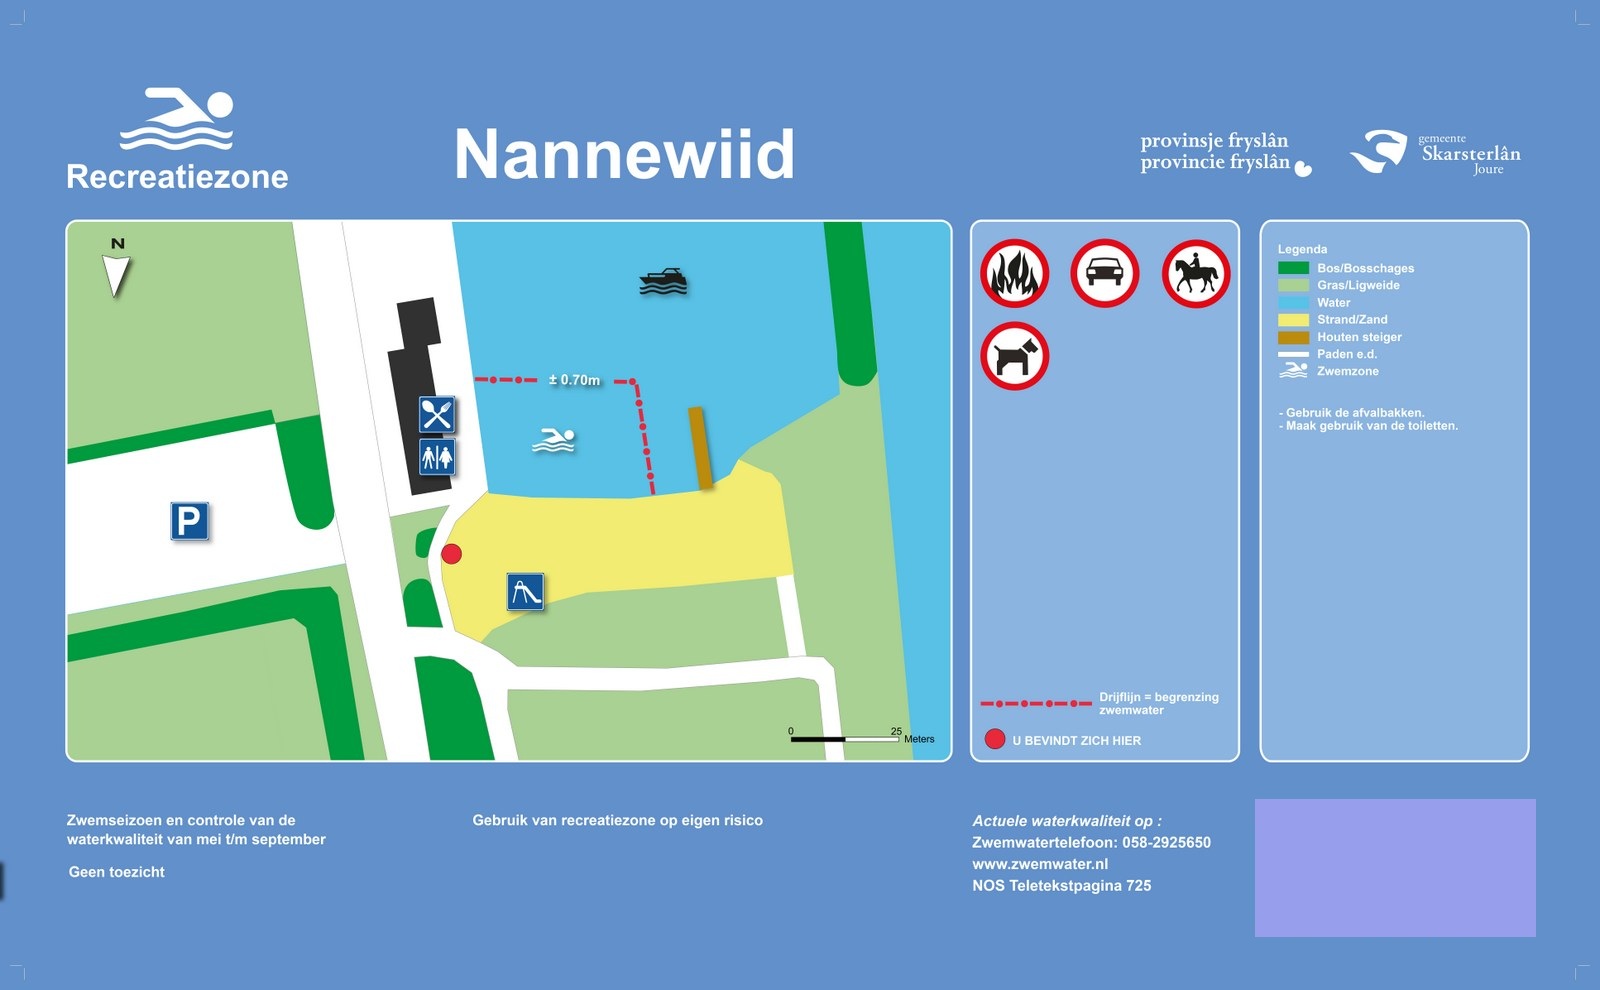 Het informatiebord bij zwemlocatie Nannewiid